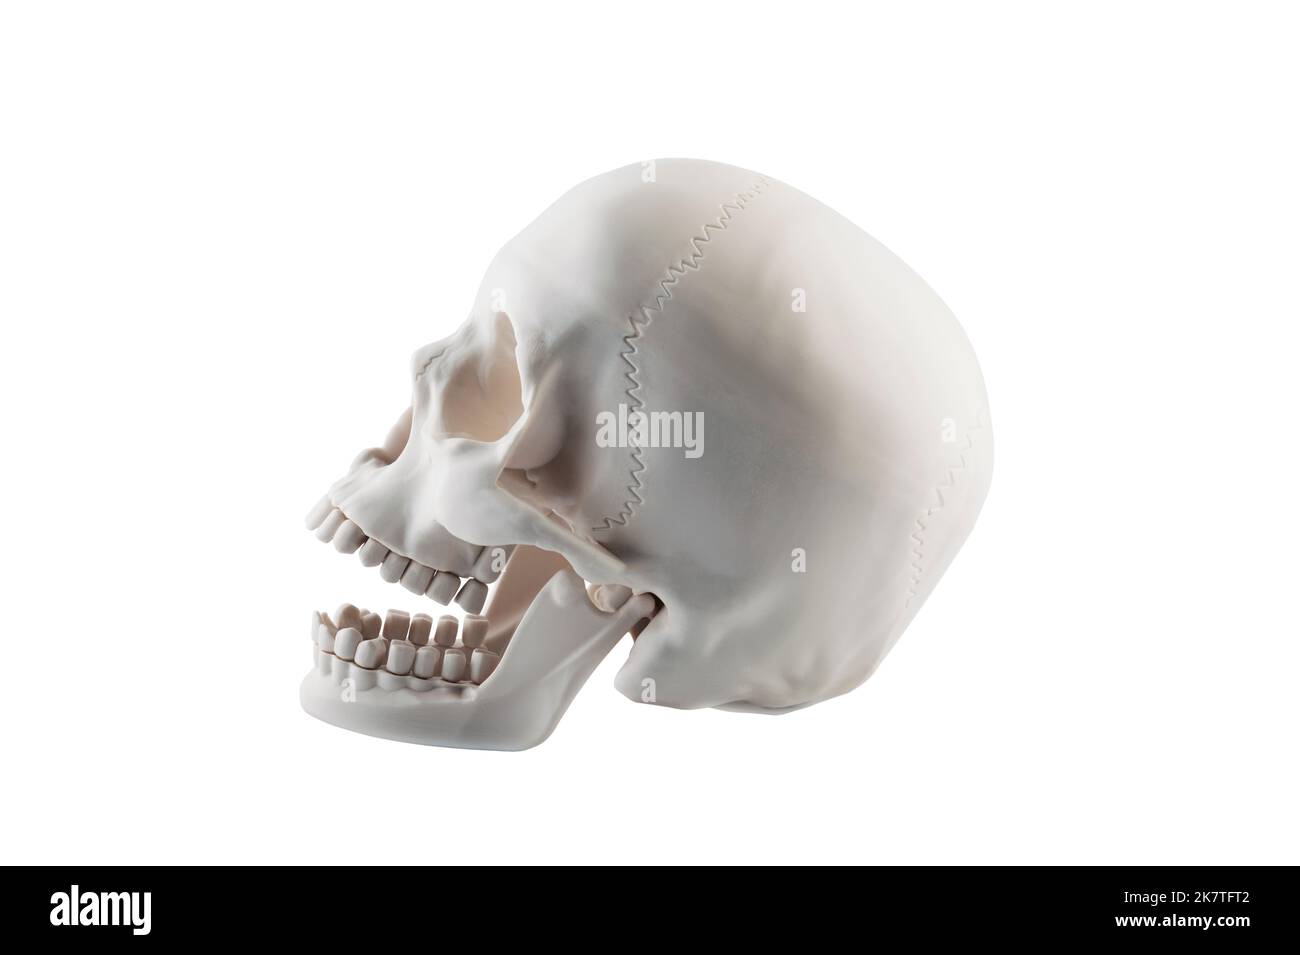 Crâne humain avec open jaw isolé sur fond blanc avec clipping path Banque D'Images